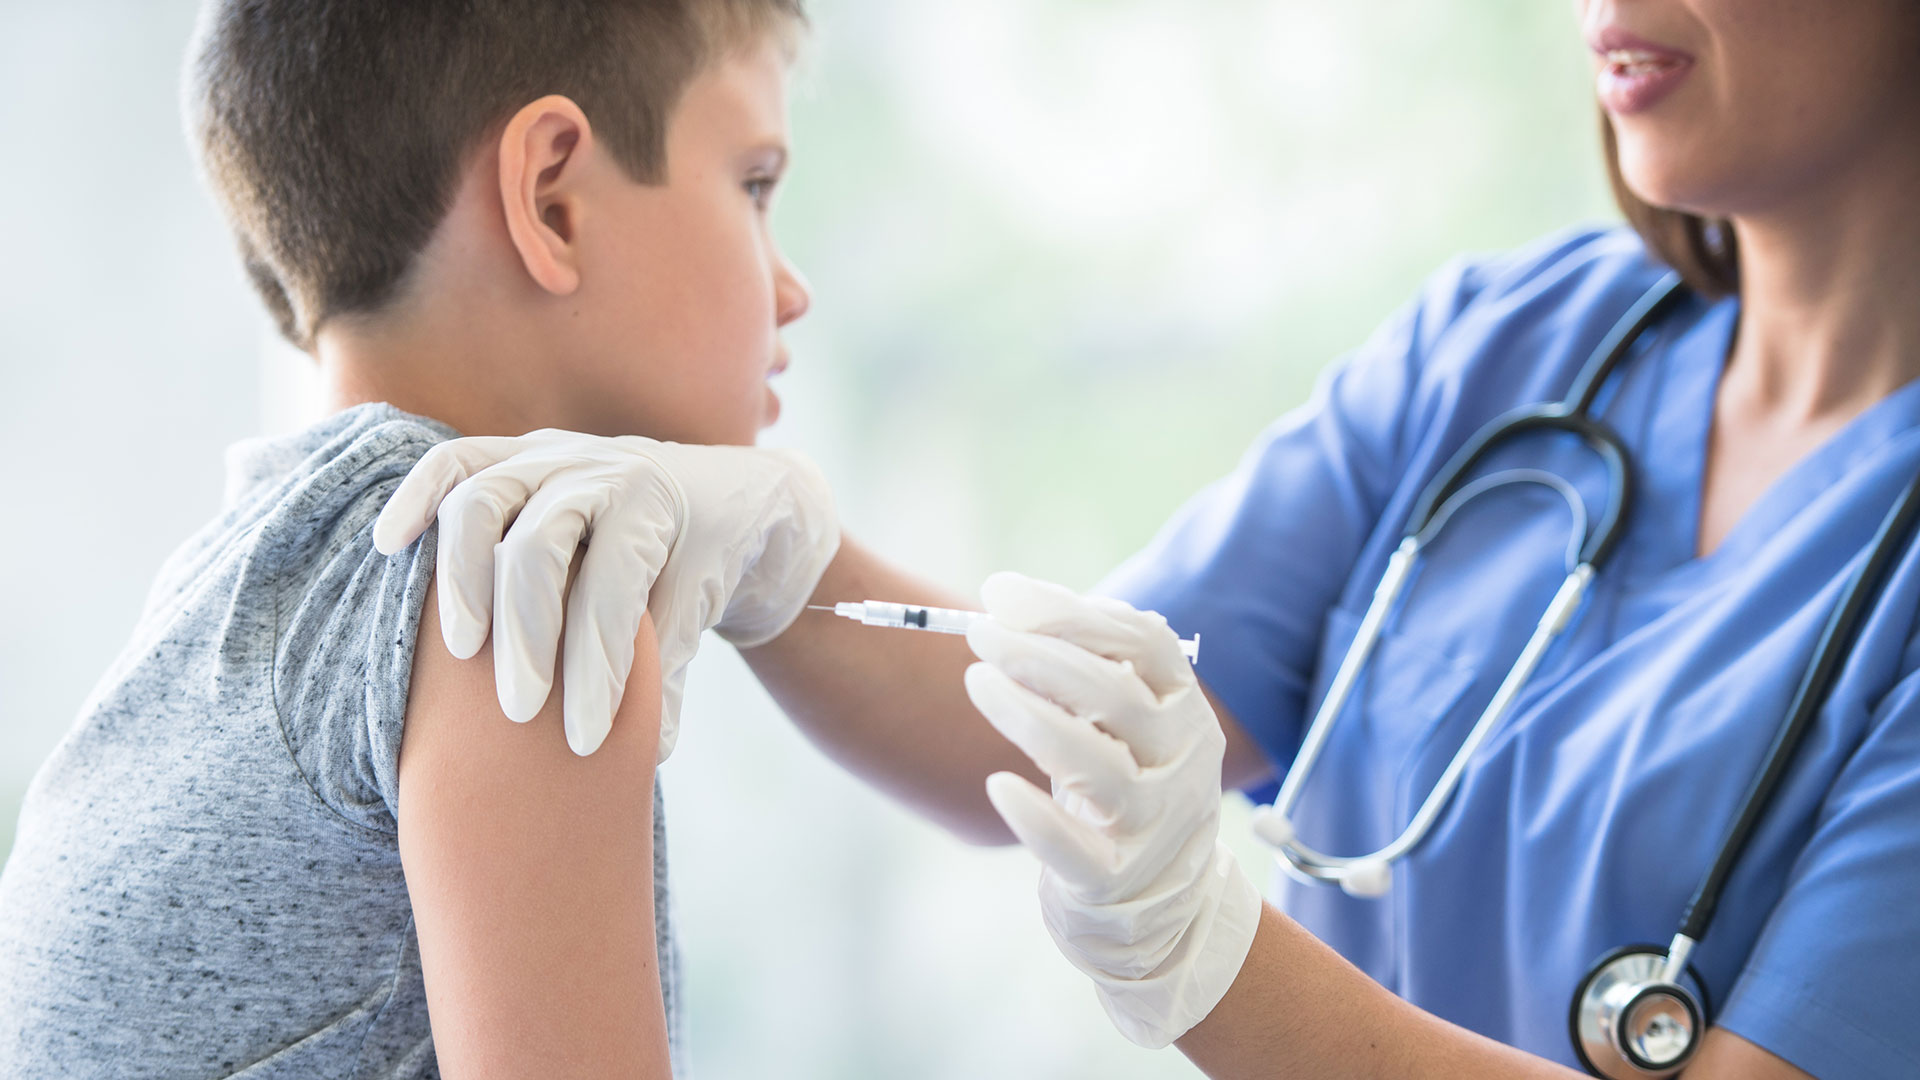 El no cumplir con un esquema de vacunación completo pone en riesgo la salud y supervivencia de los infantes (Getty Images)